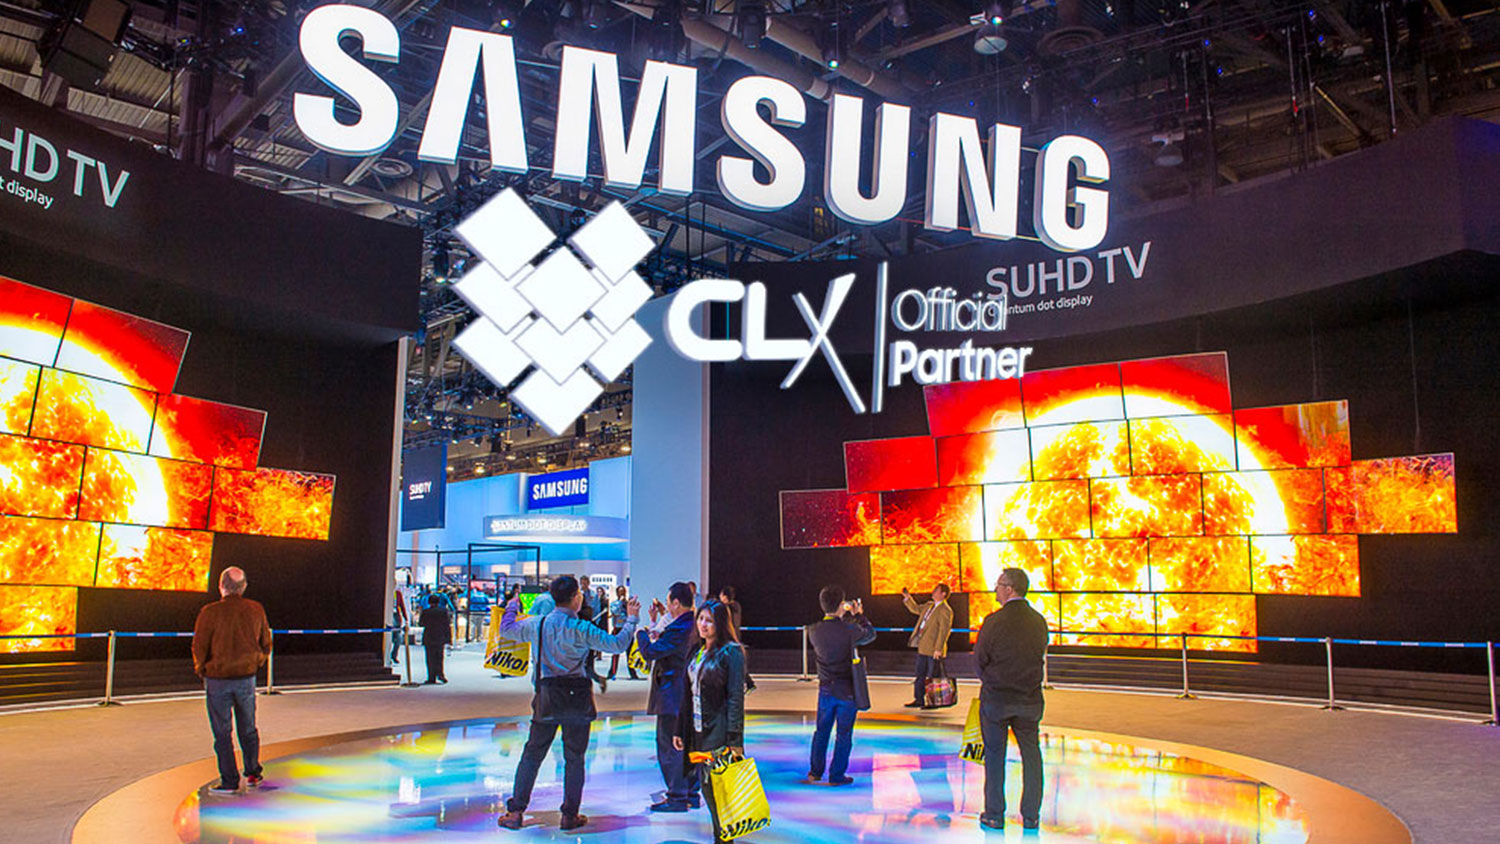 CLX Samsung estuvo presente en el CES 2019